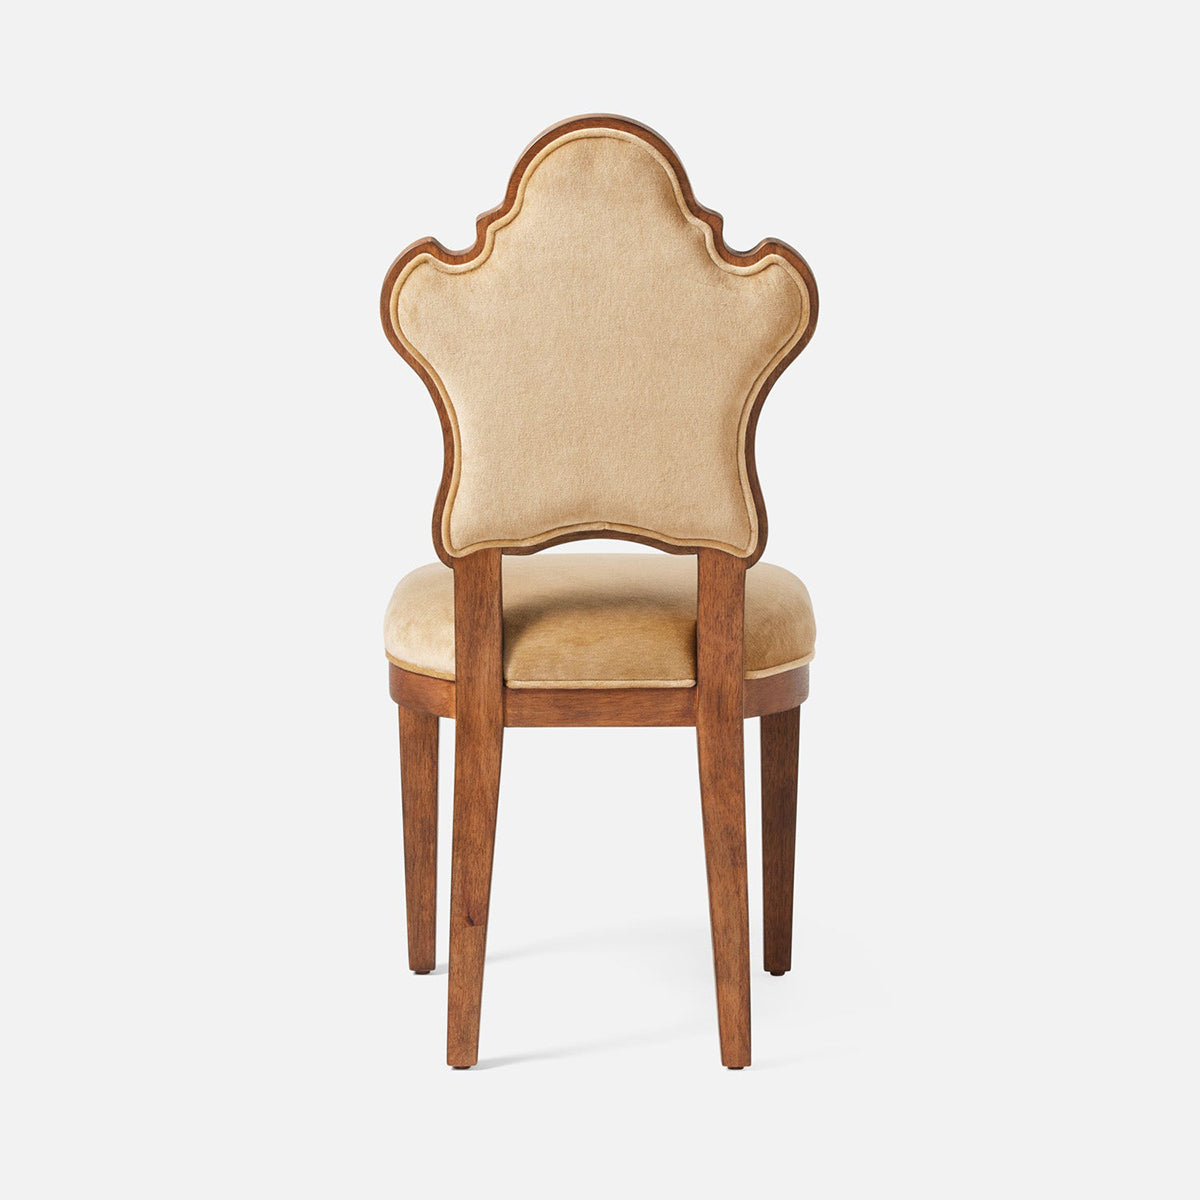 Made Goods Madisen Ornate Back Dining Chair in Liard Cotton Velvet